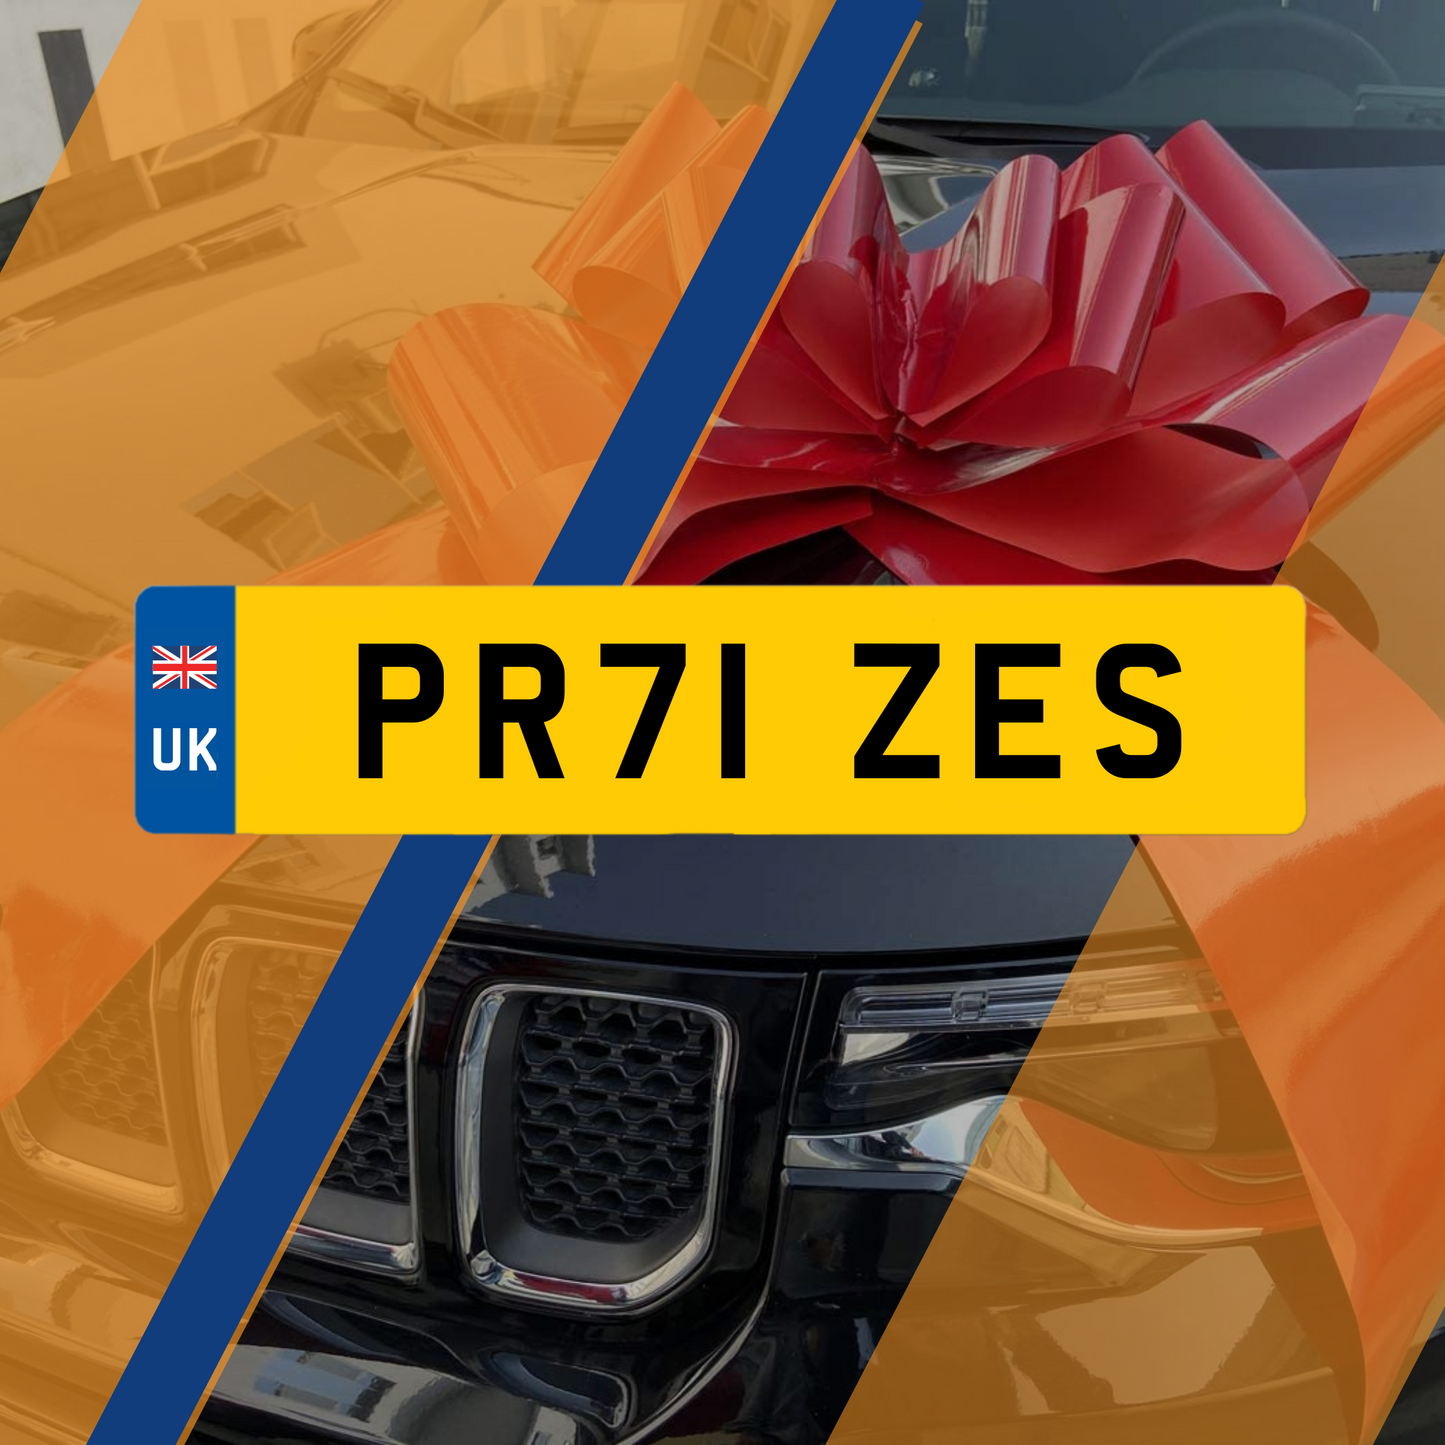 PR71 ZES